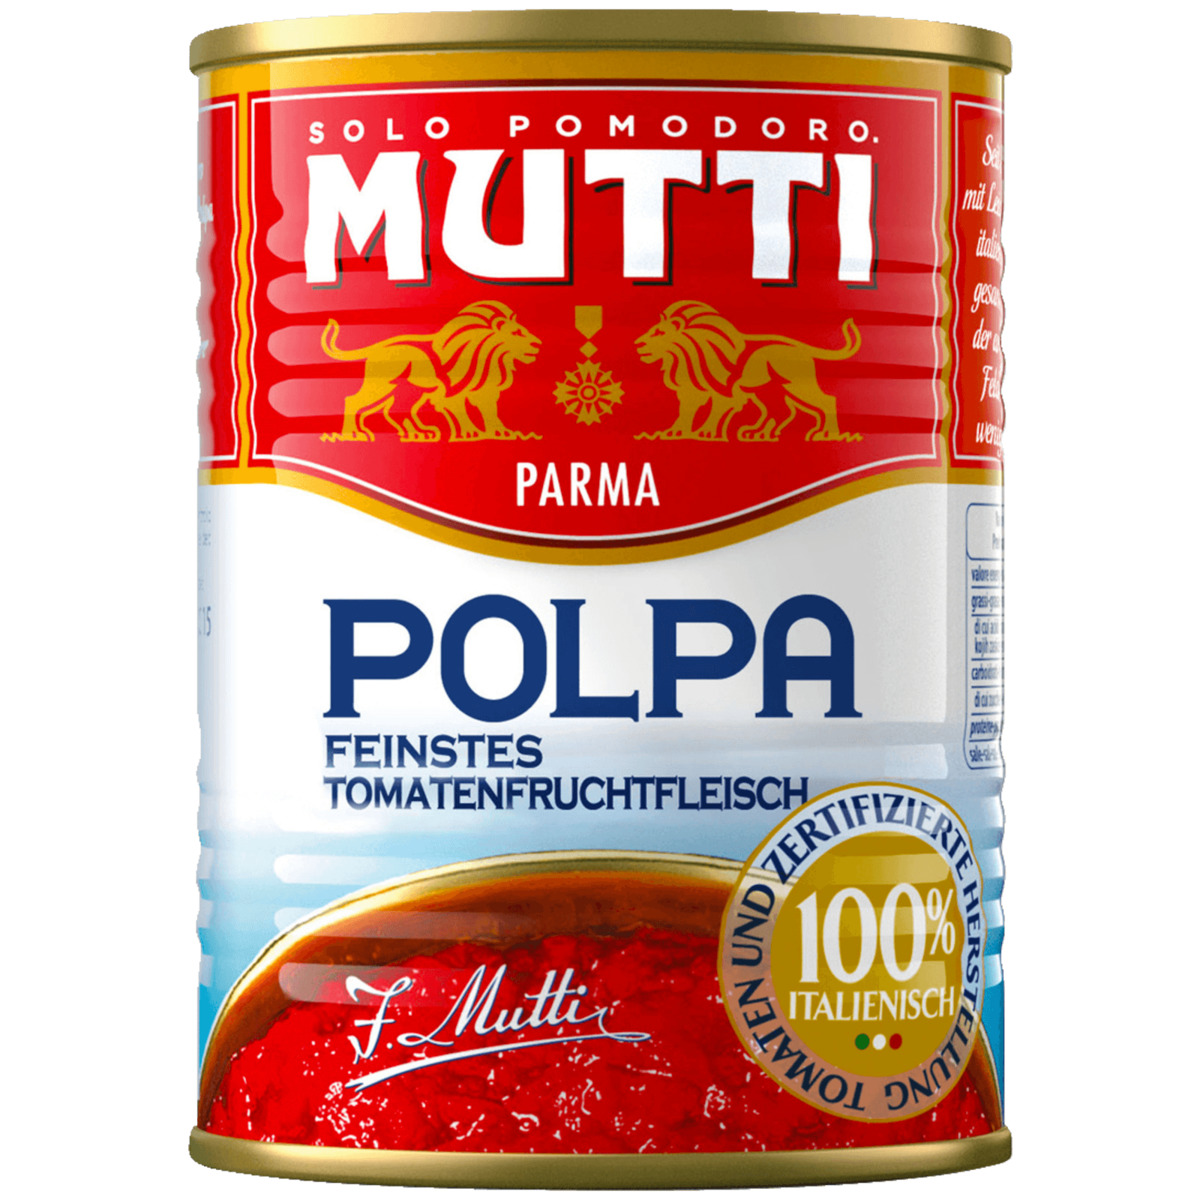 Mutti Polpa Feinstes Tomatenfruchtfleisch 400g von REWE ansehen!